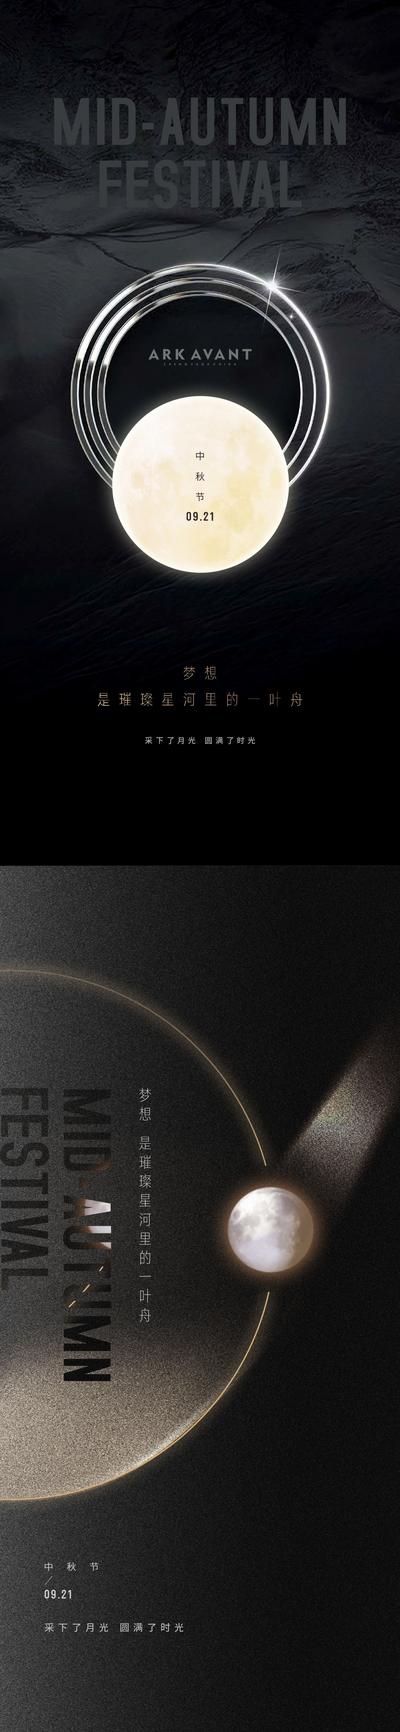 南门网 海报 中国传统节日 房地产 中秋节 月亮 星河 质感 